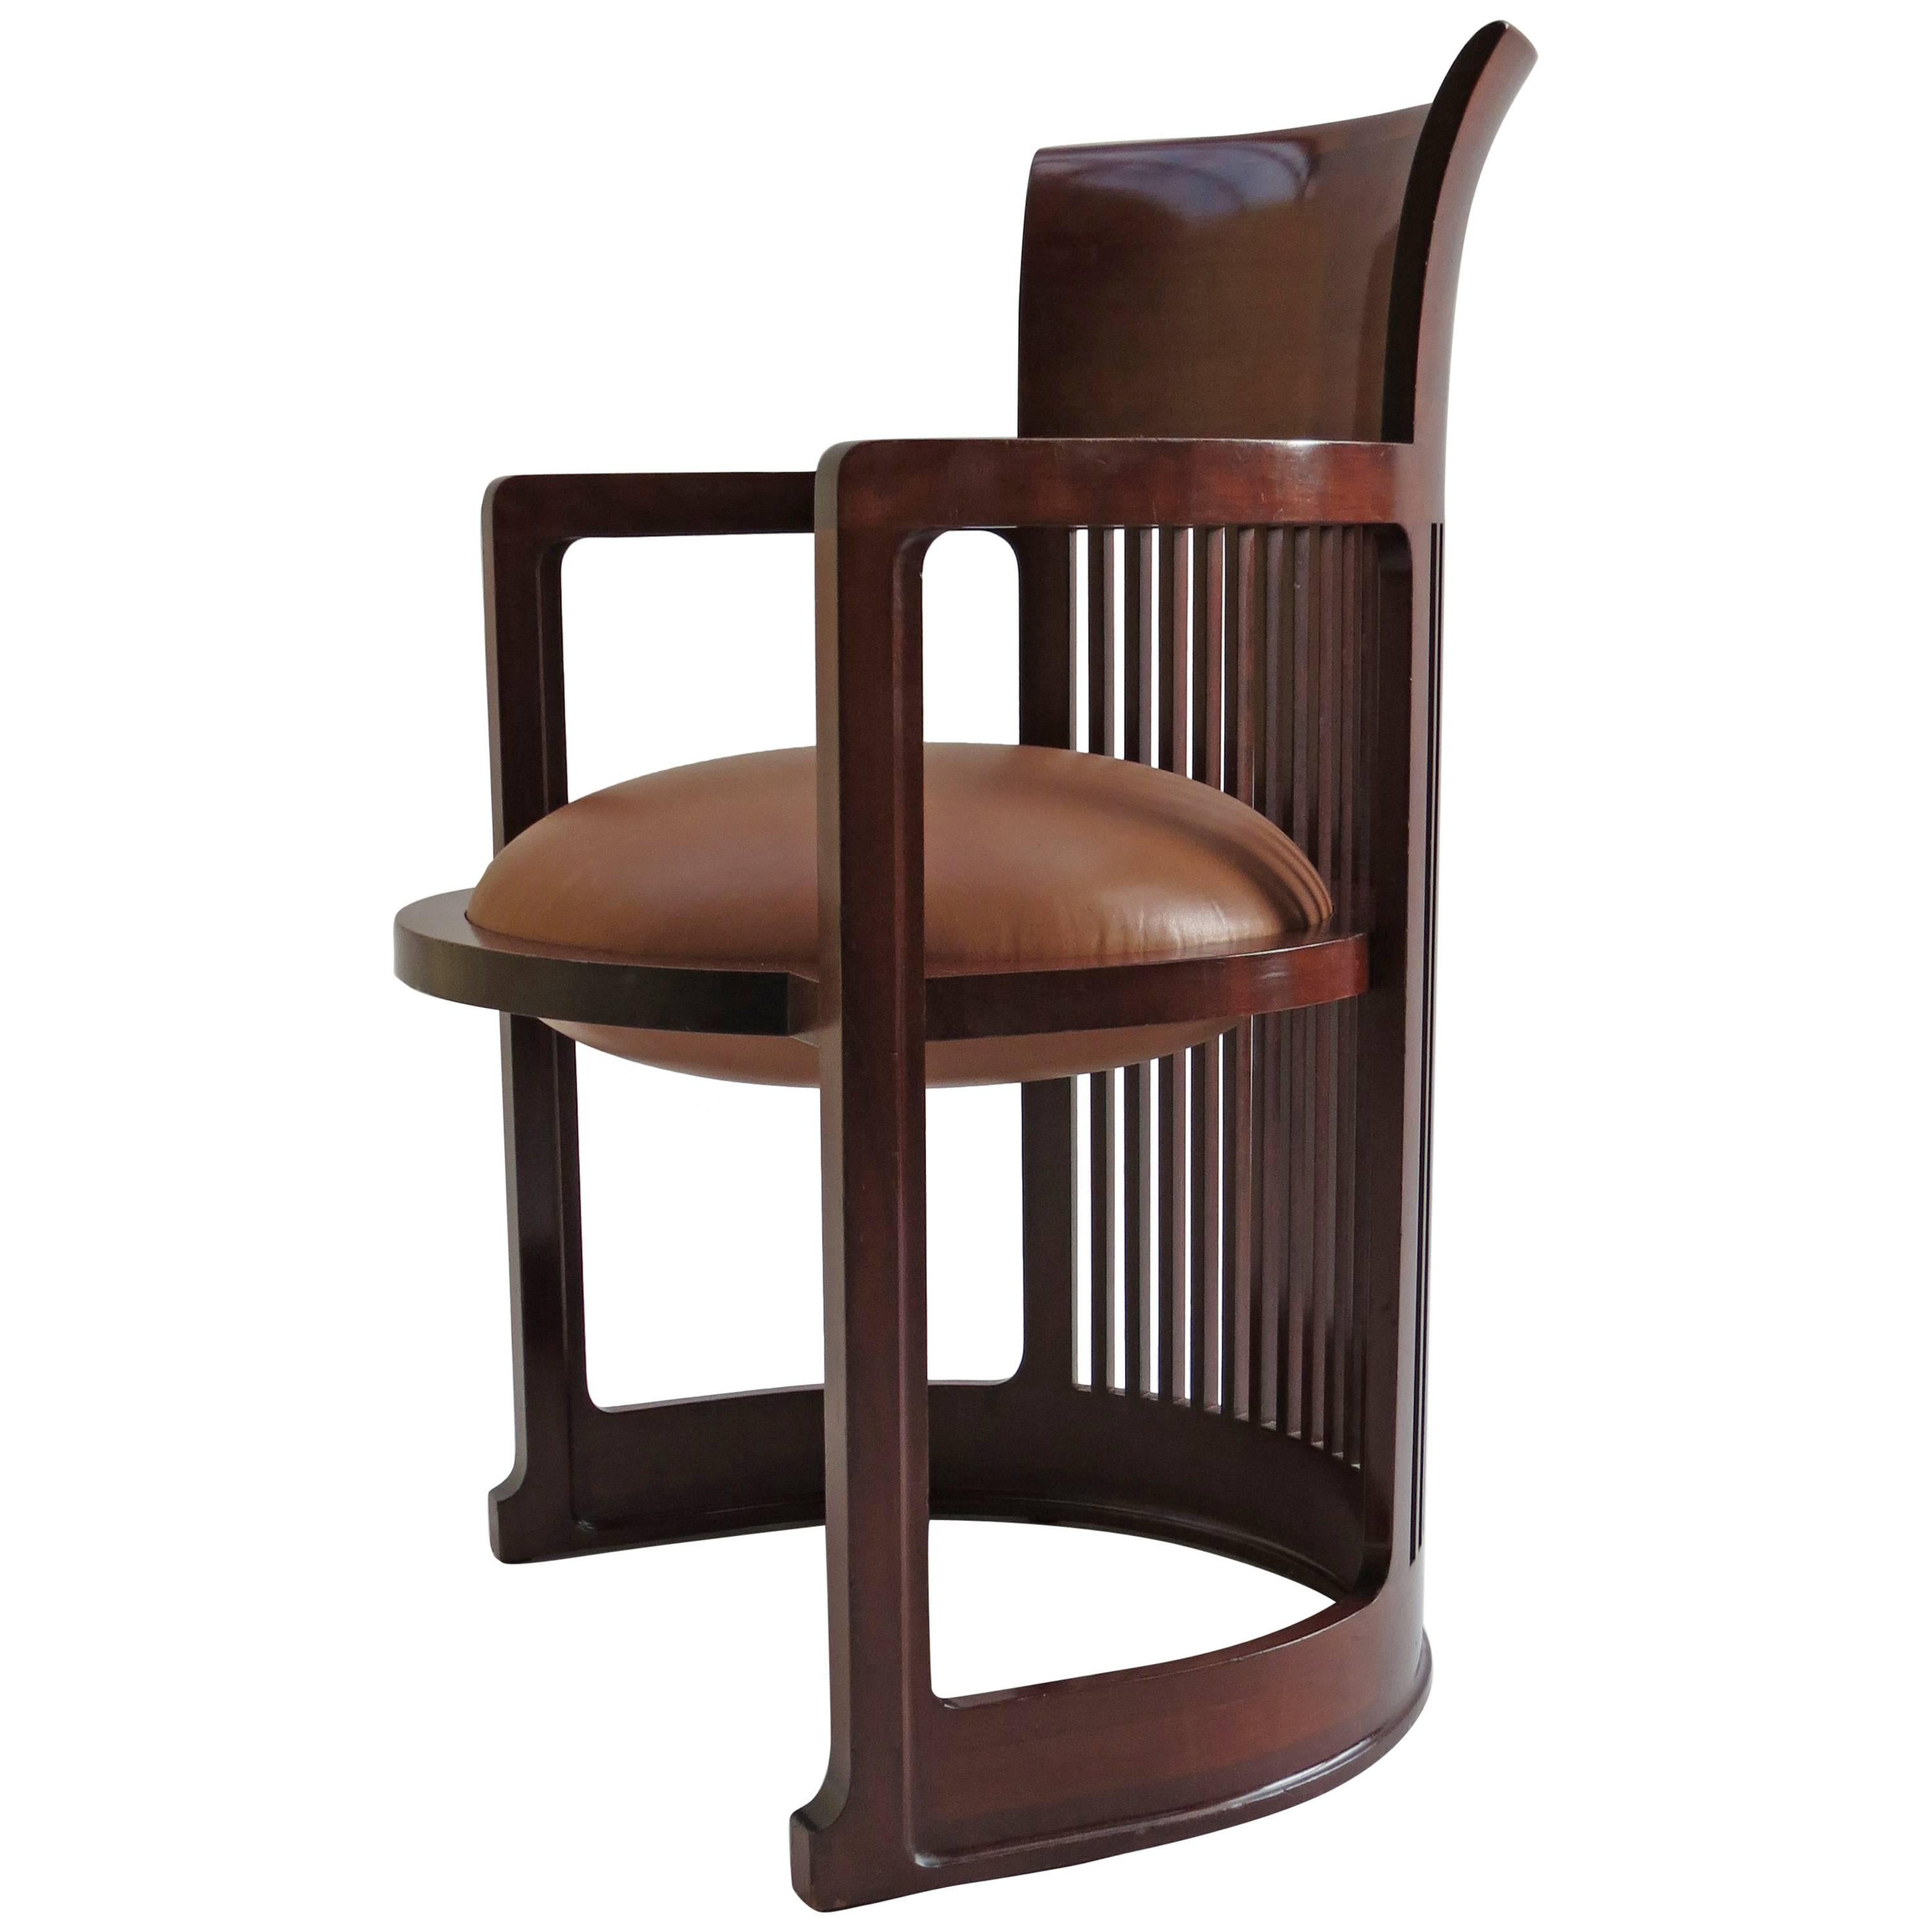 Barrel Taliesin Chair designed by Frank Lloyd Wright